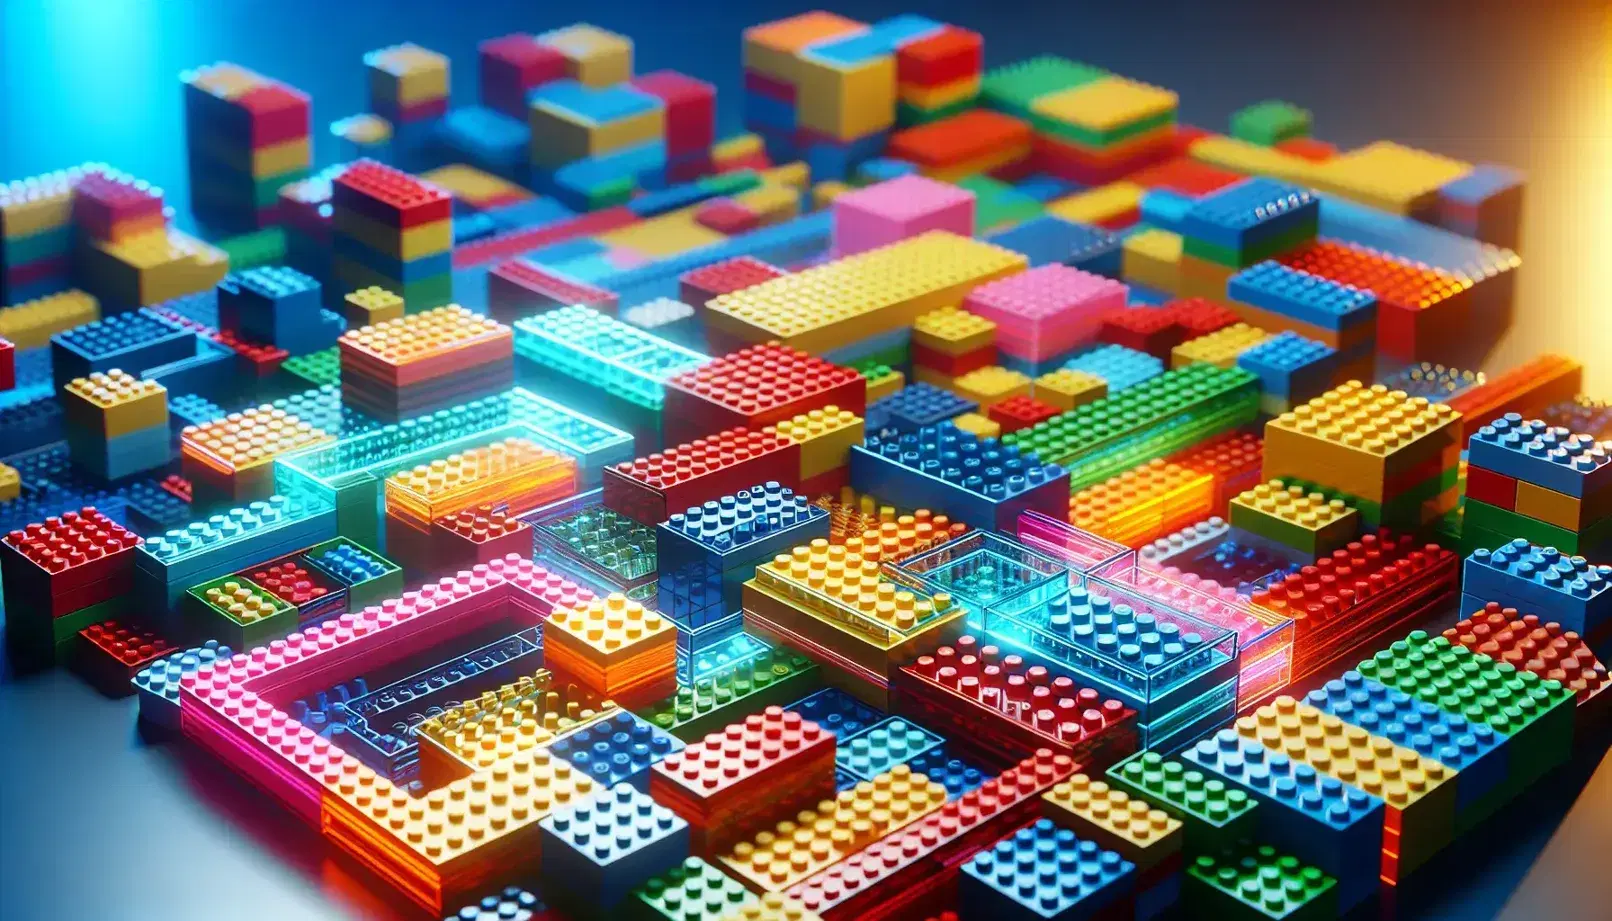 Bloques de construcción tipo Lego en colores vivos formando una estructura tridimensional sobre superficie plana, con piezas adicionales desenfocadas al fondo.